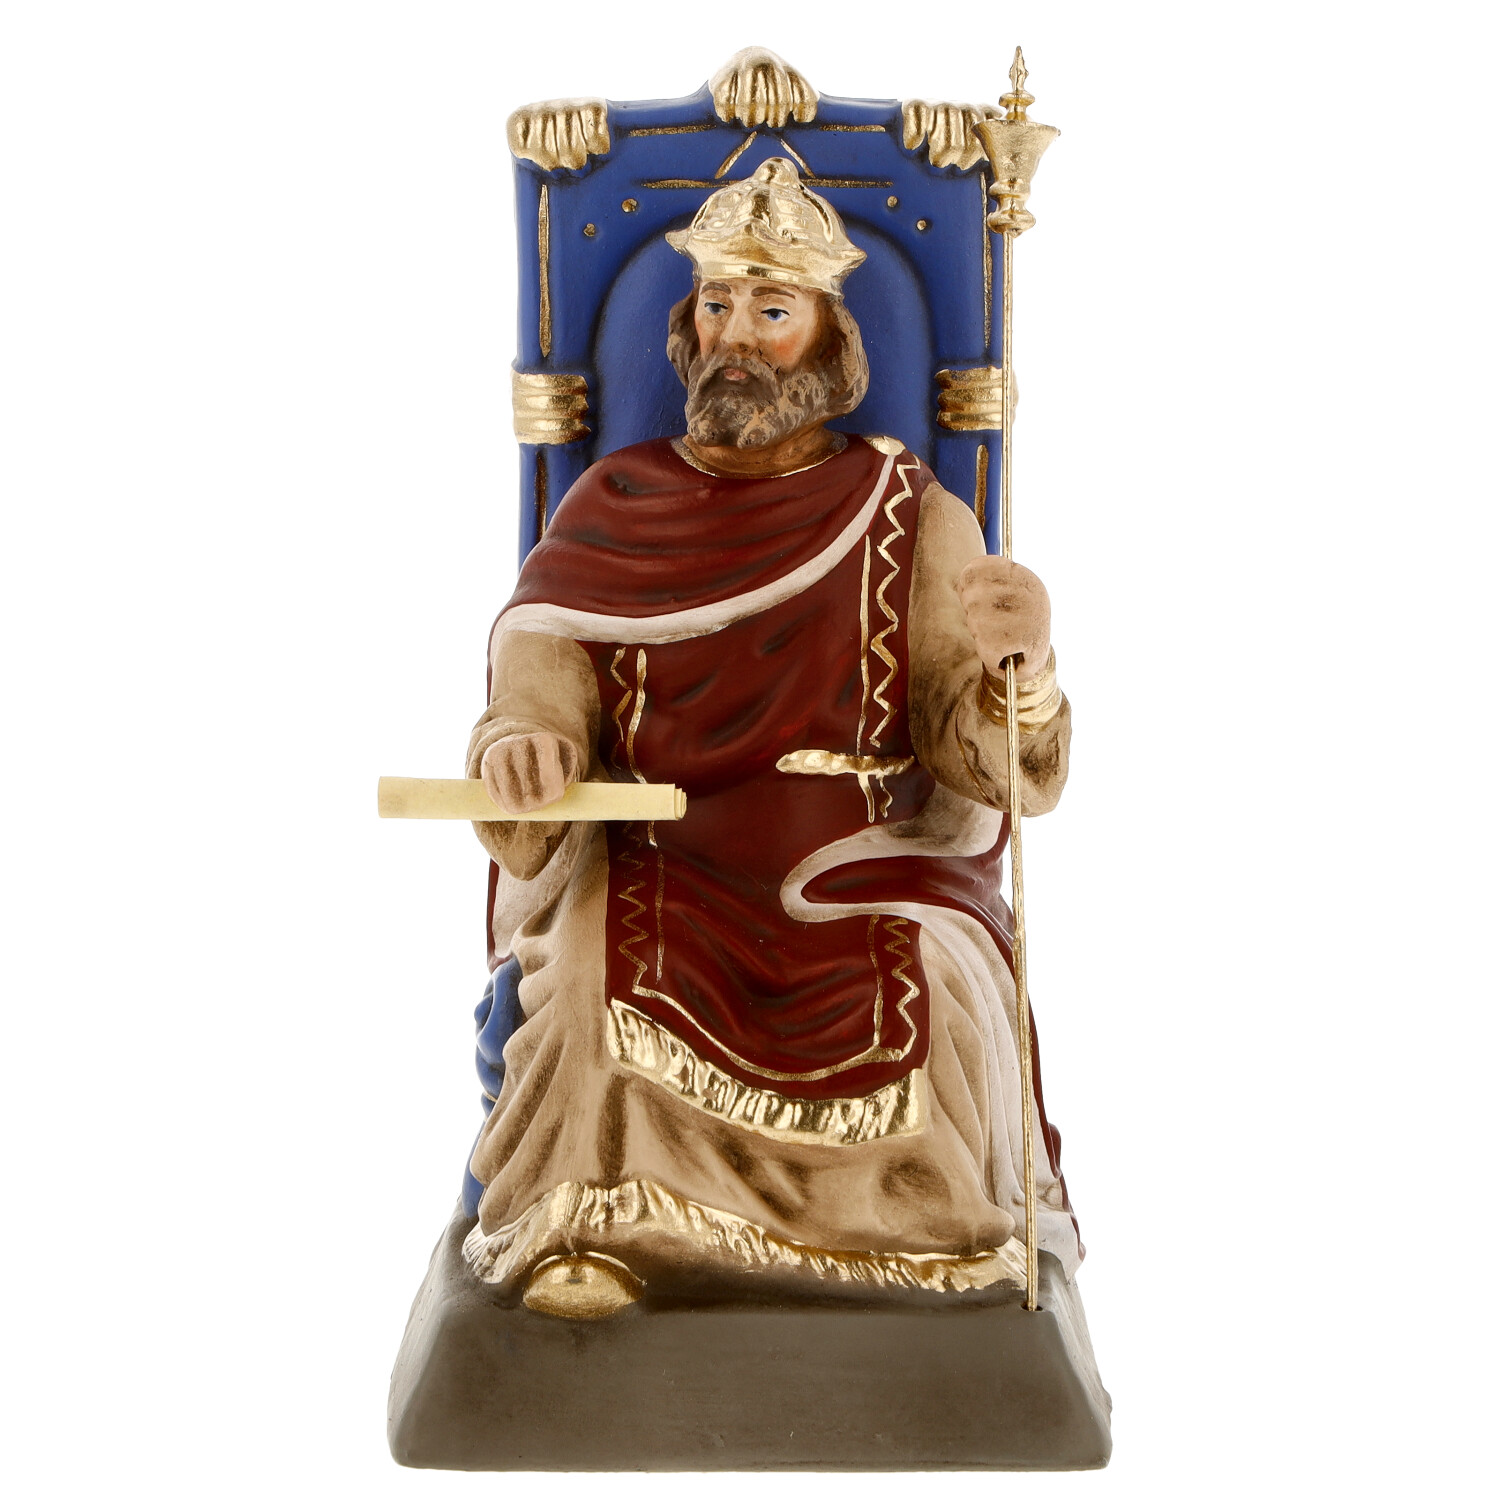 Herodes auf Thron sitzend - Marolin Krippenfigur - made in Germany